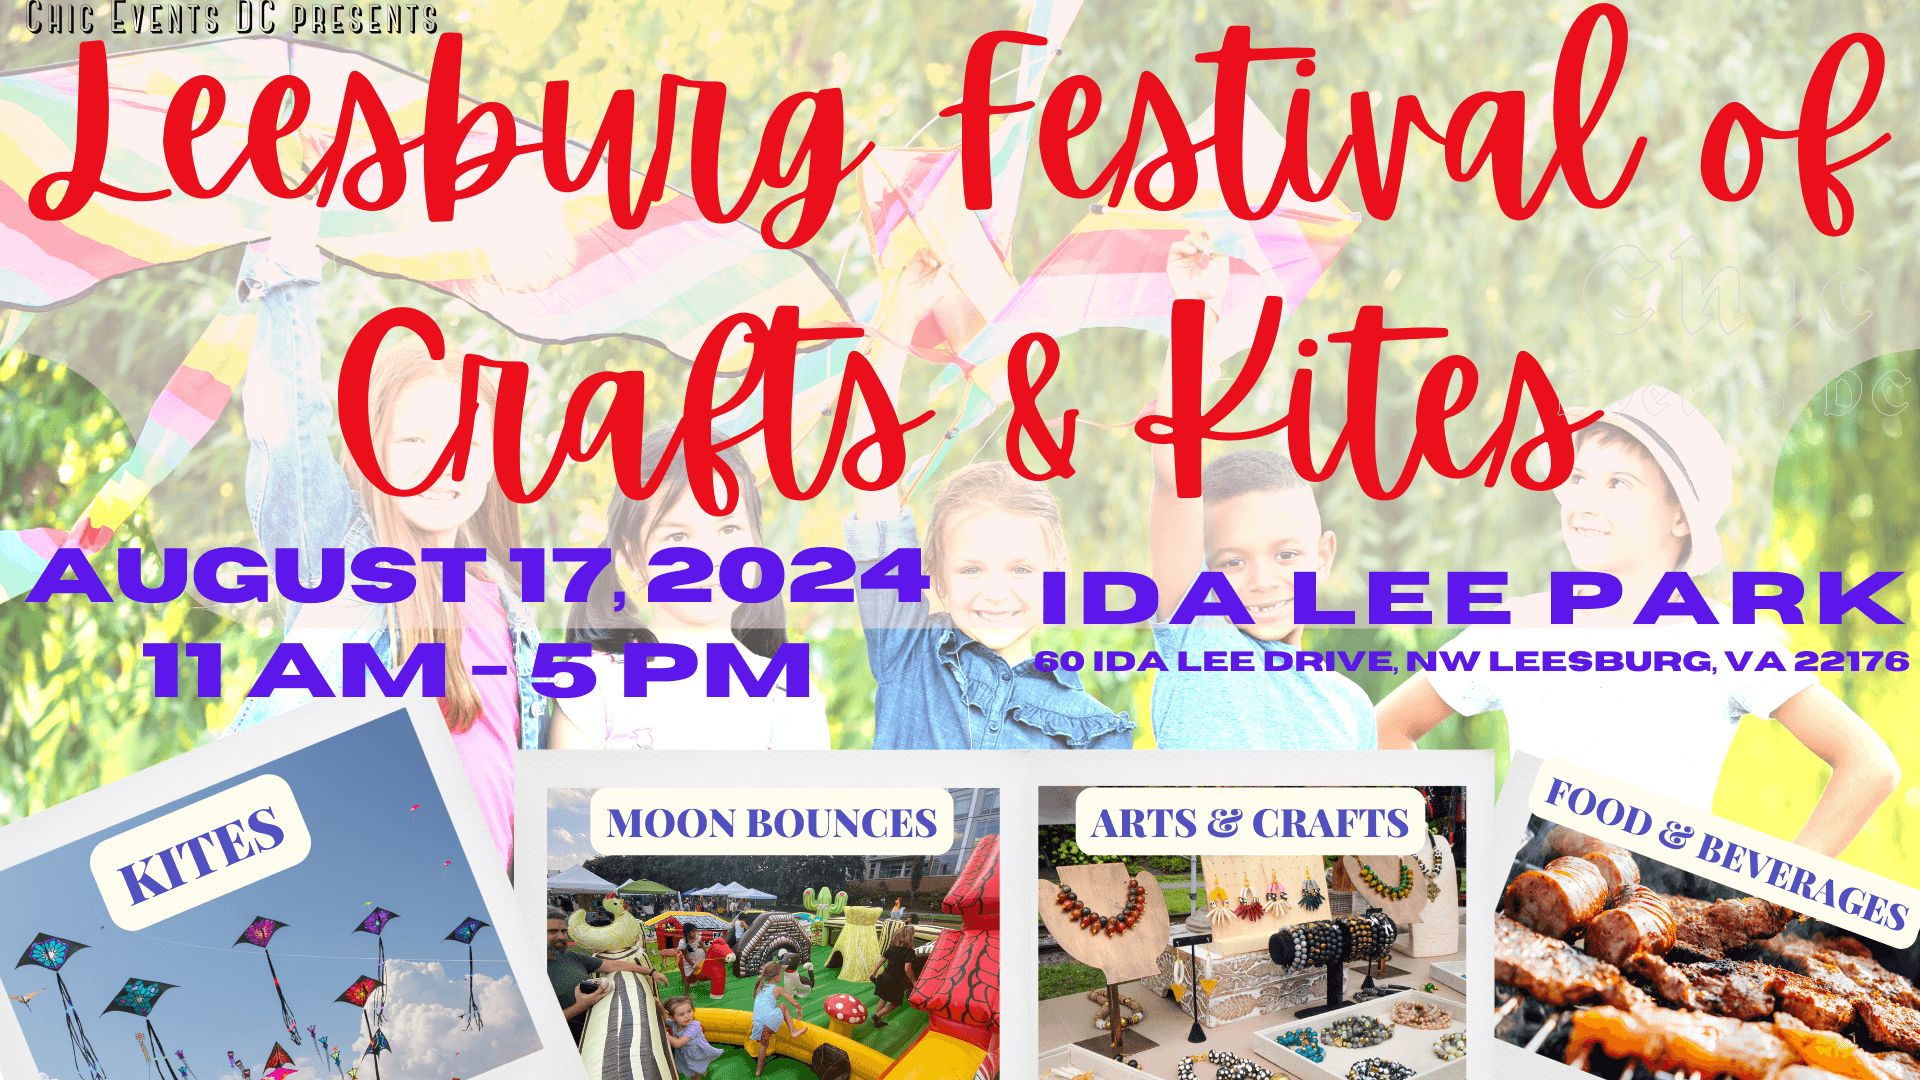 Leesburg Festival of Crafts and Kites @ Ida Lee Park, Leesburg, Virginia, United States